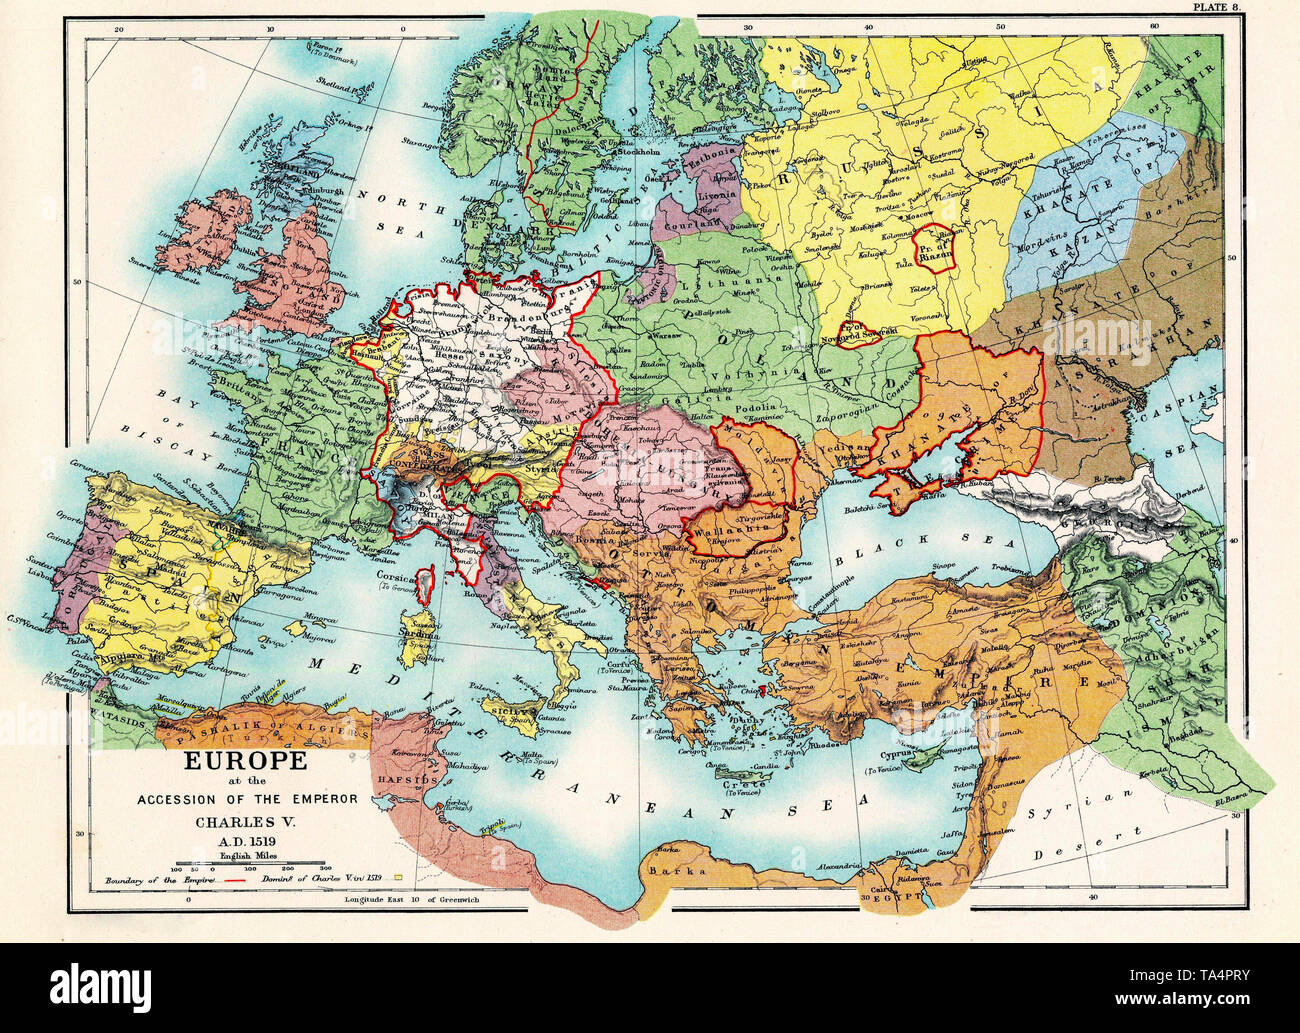 Europa an der Thronbesteigung von Kaiser Karl V (1519) Stockfoto